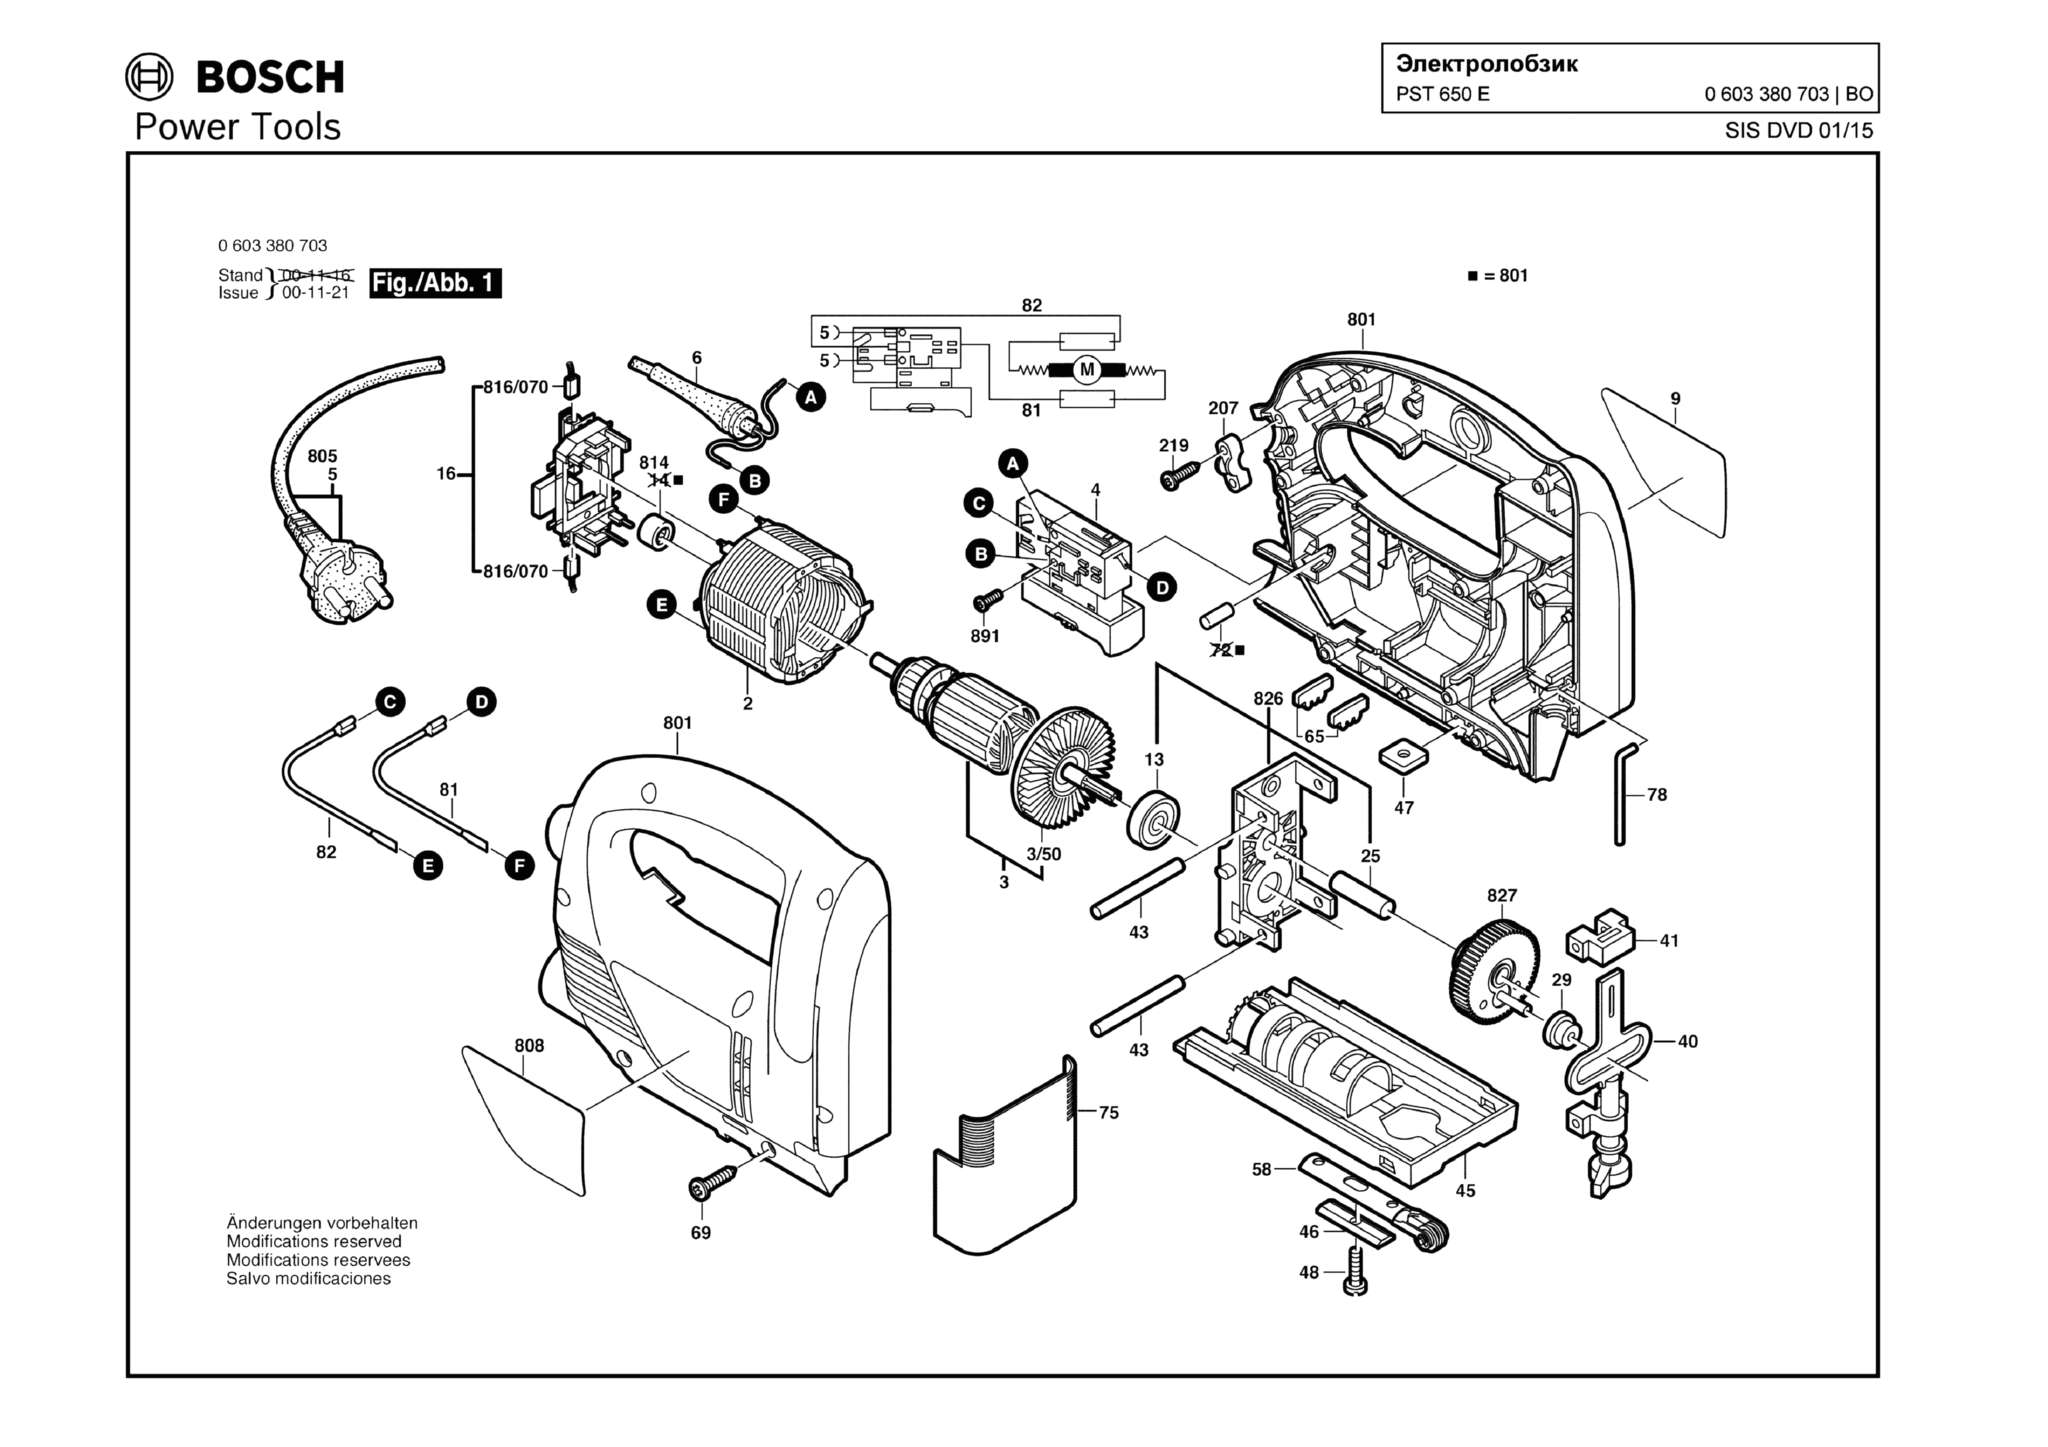 Запчасти, схема и деталировка Bosch PST 650 E (ТИП 0603380703)